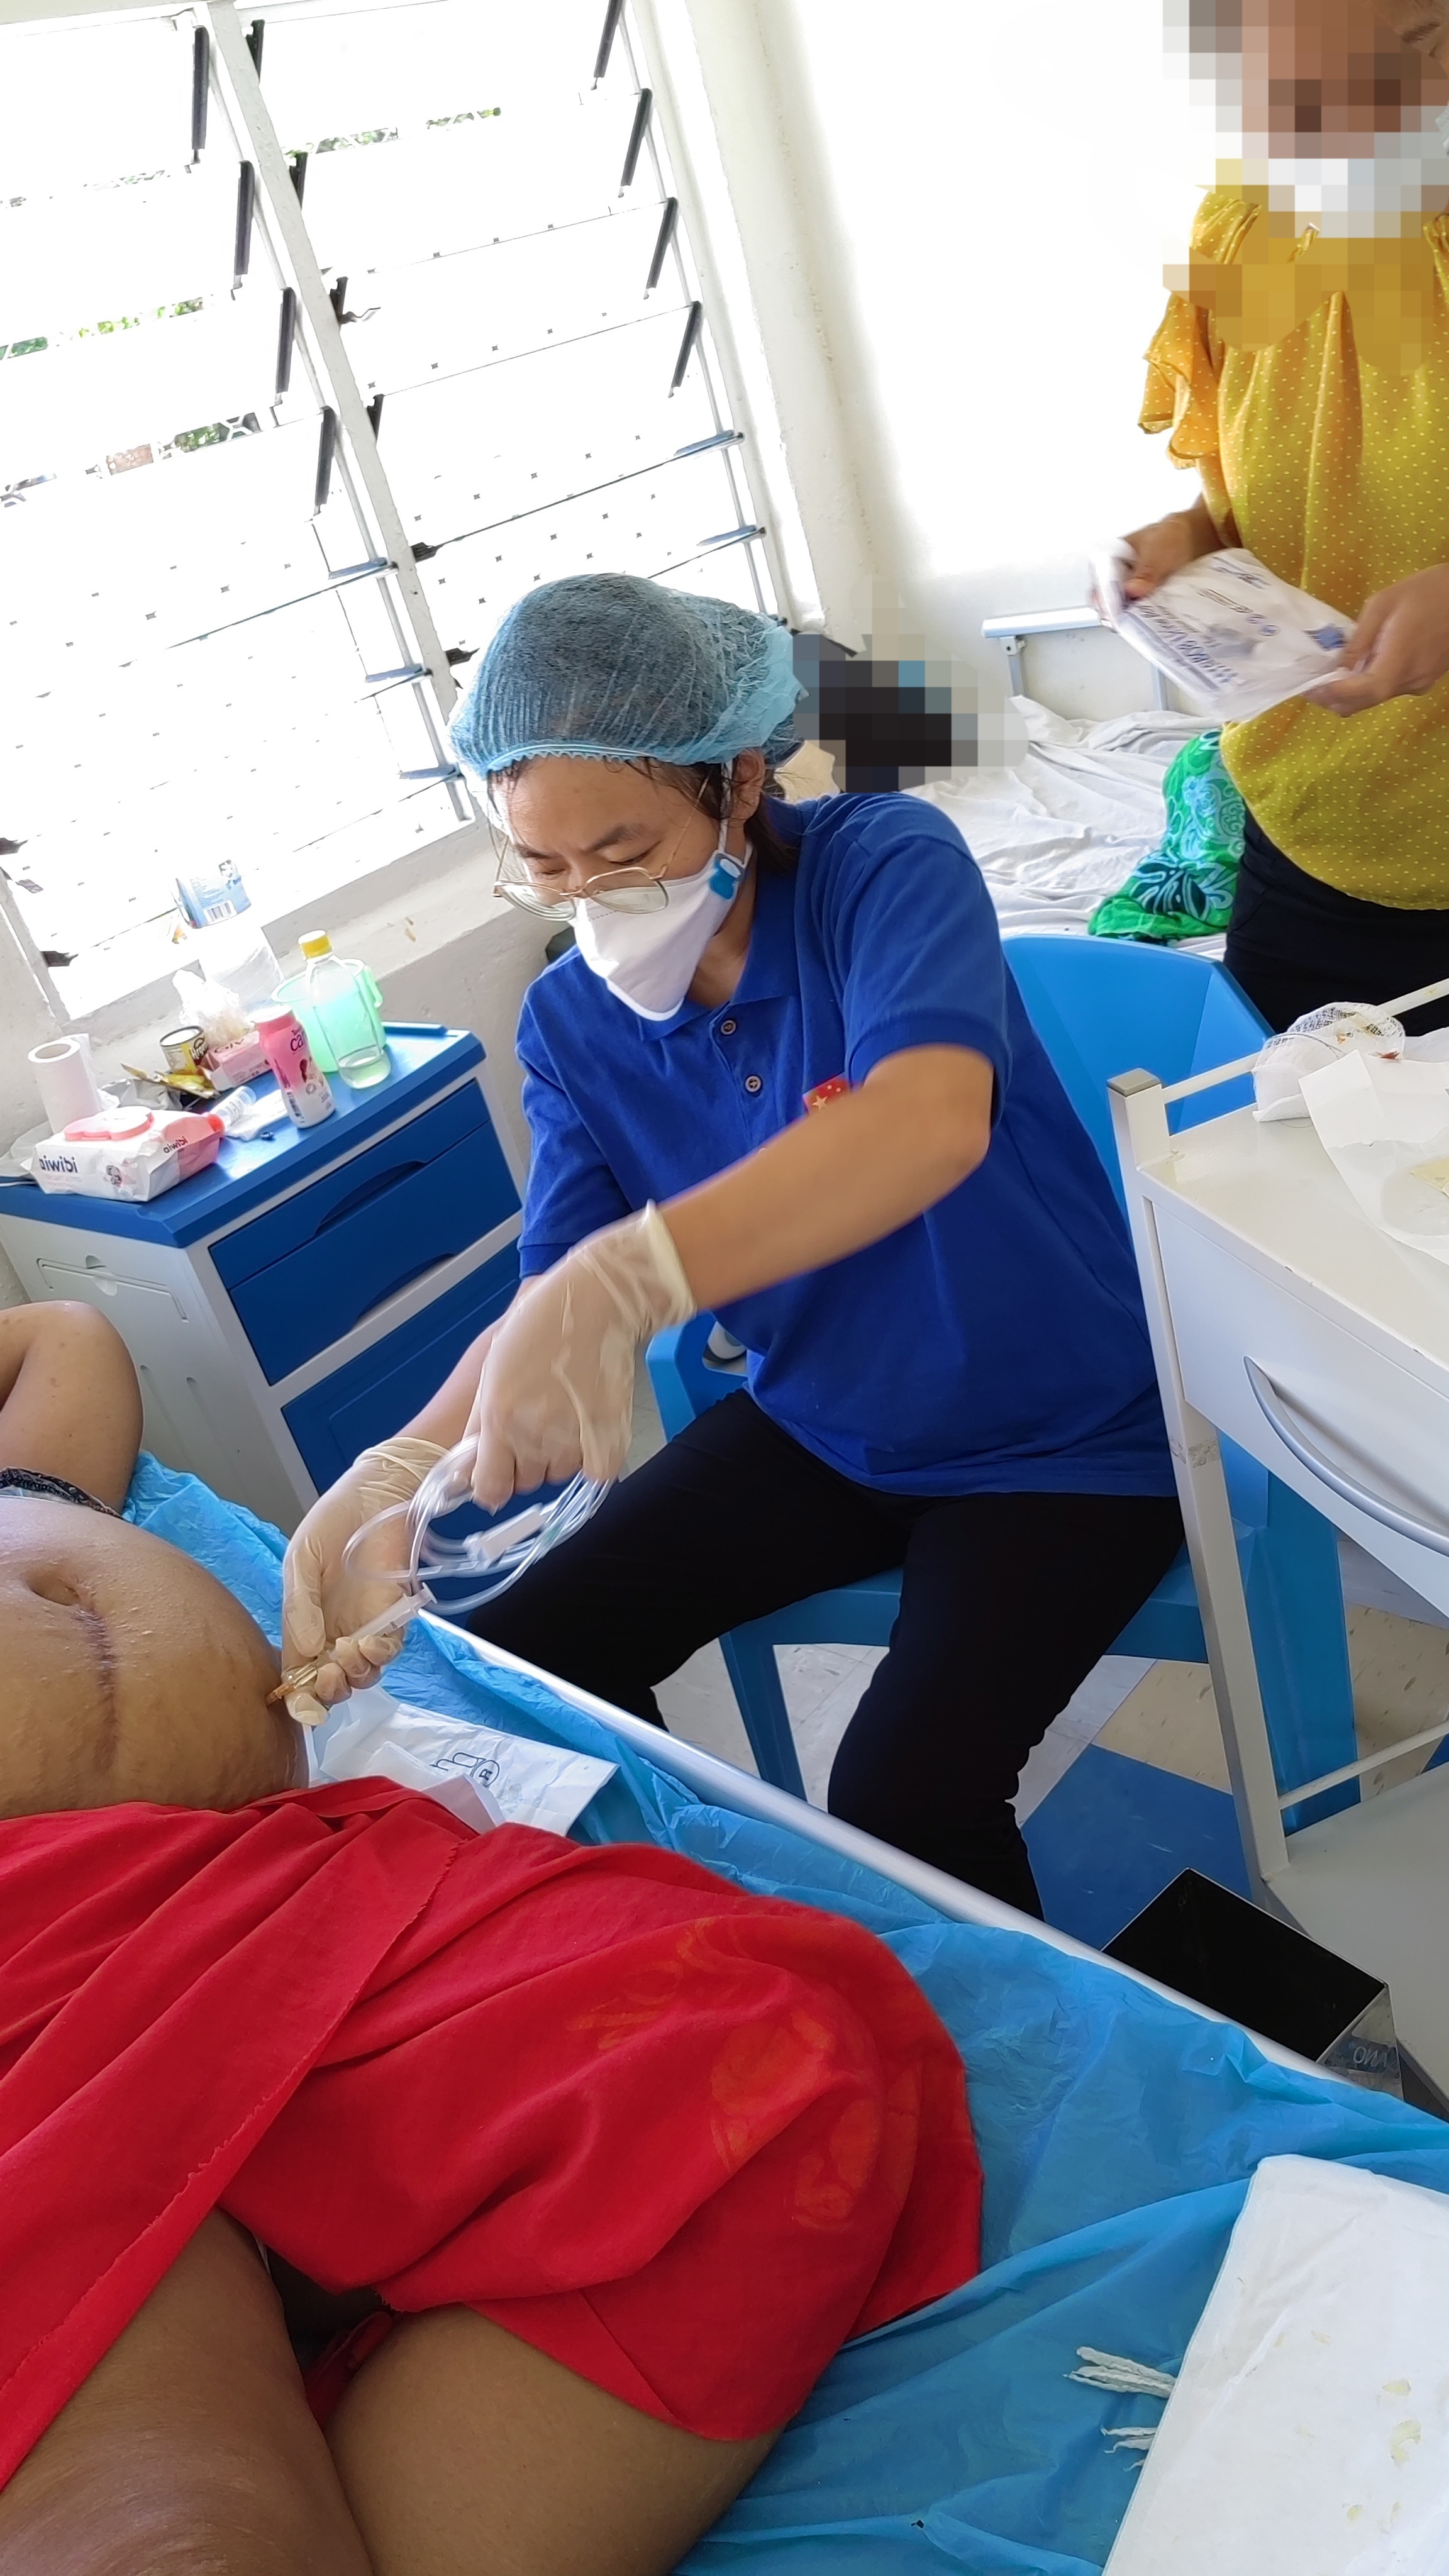 奉献在南太平洋的滨州力量——专访中国首批援基里巴斯医疗队